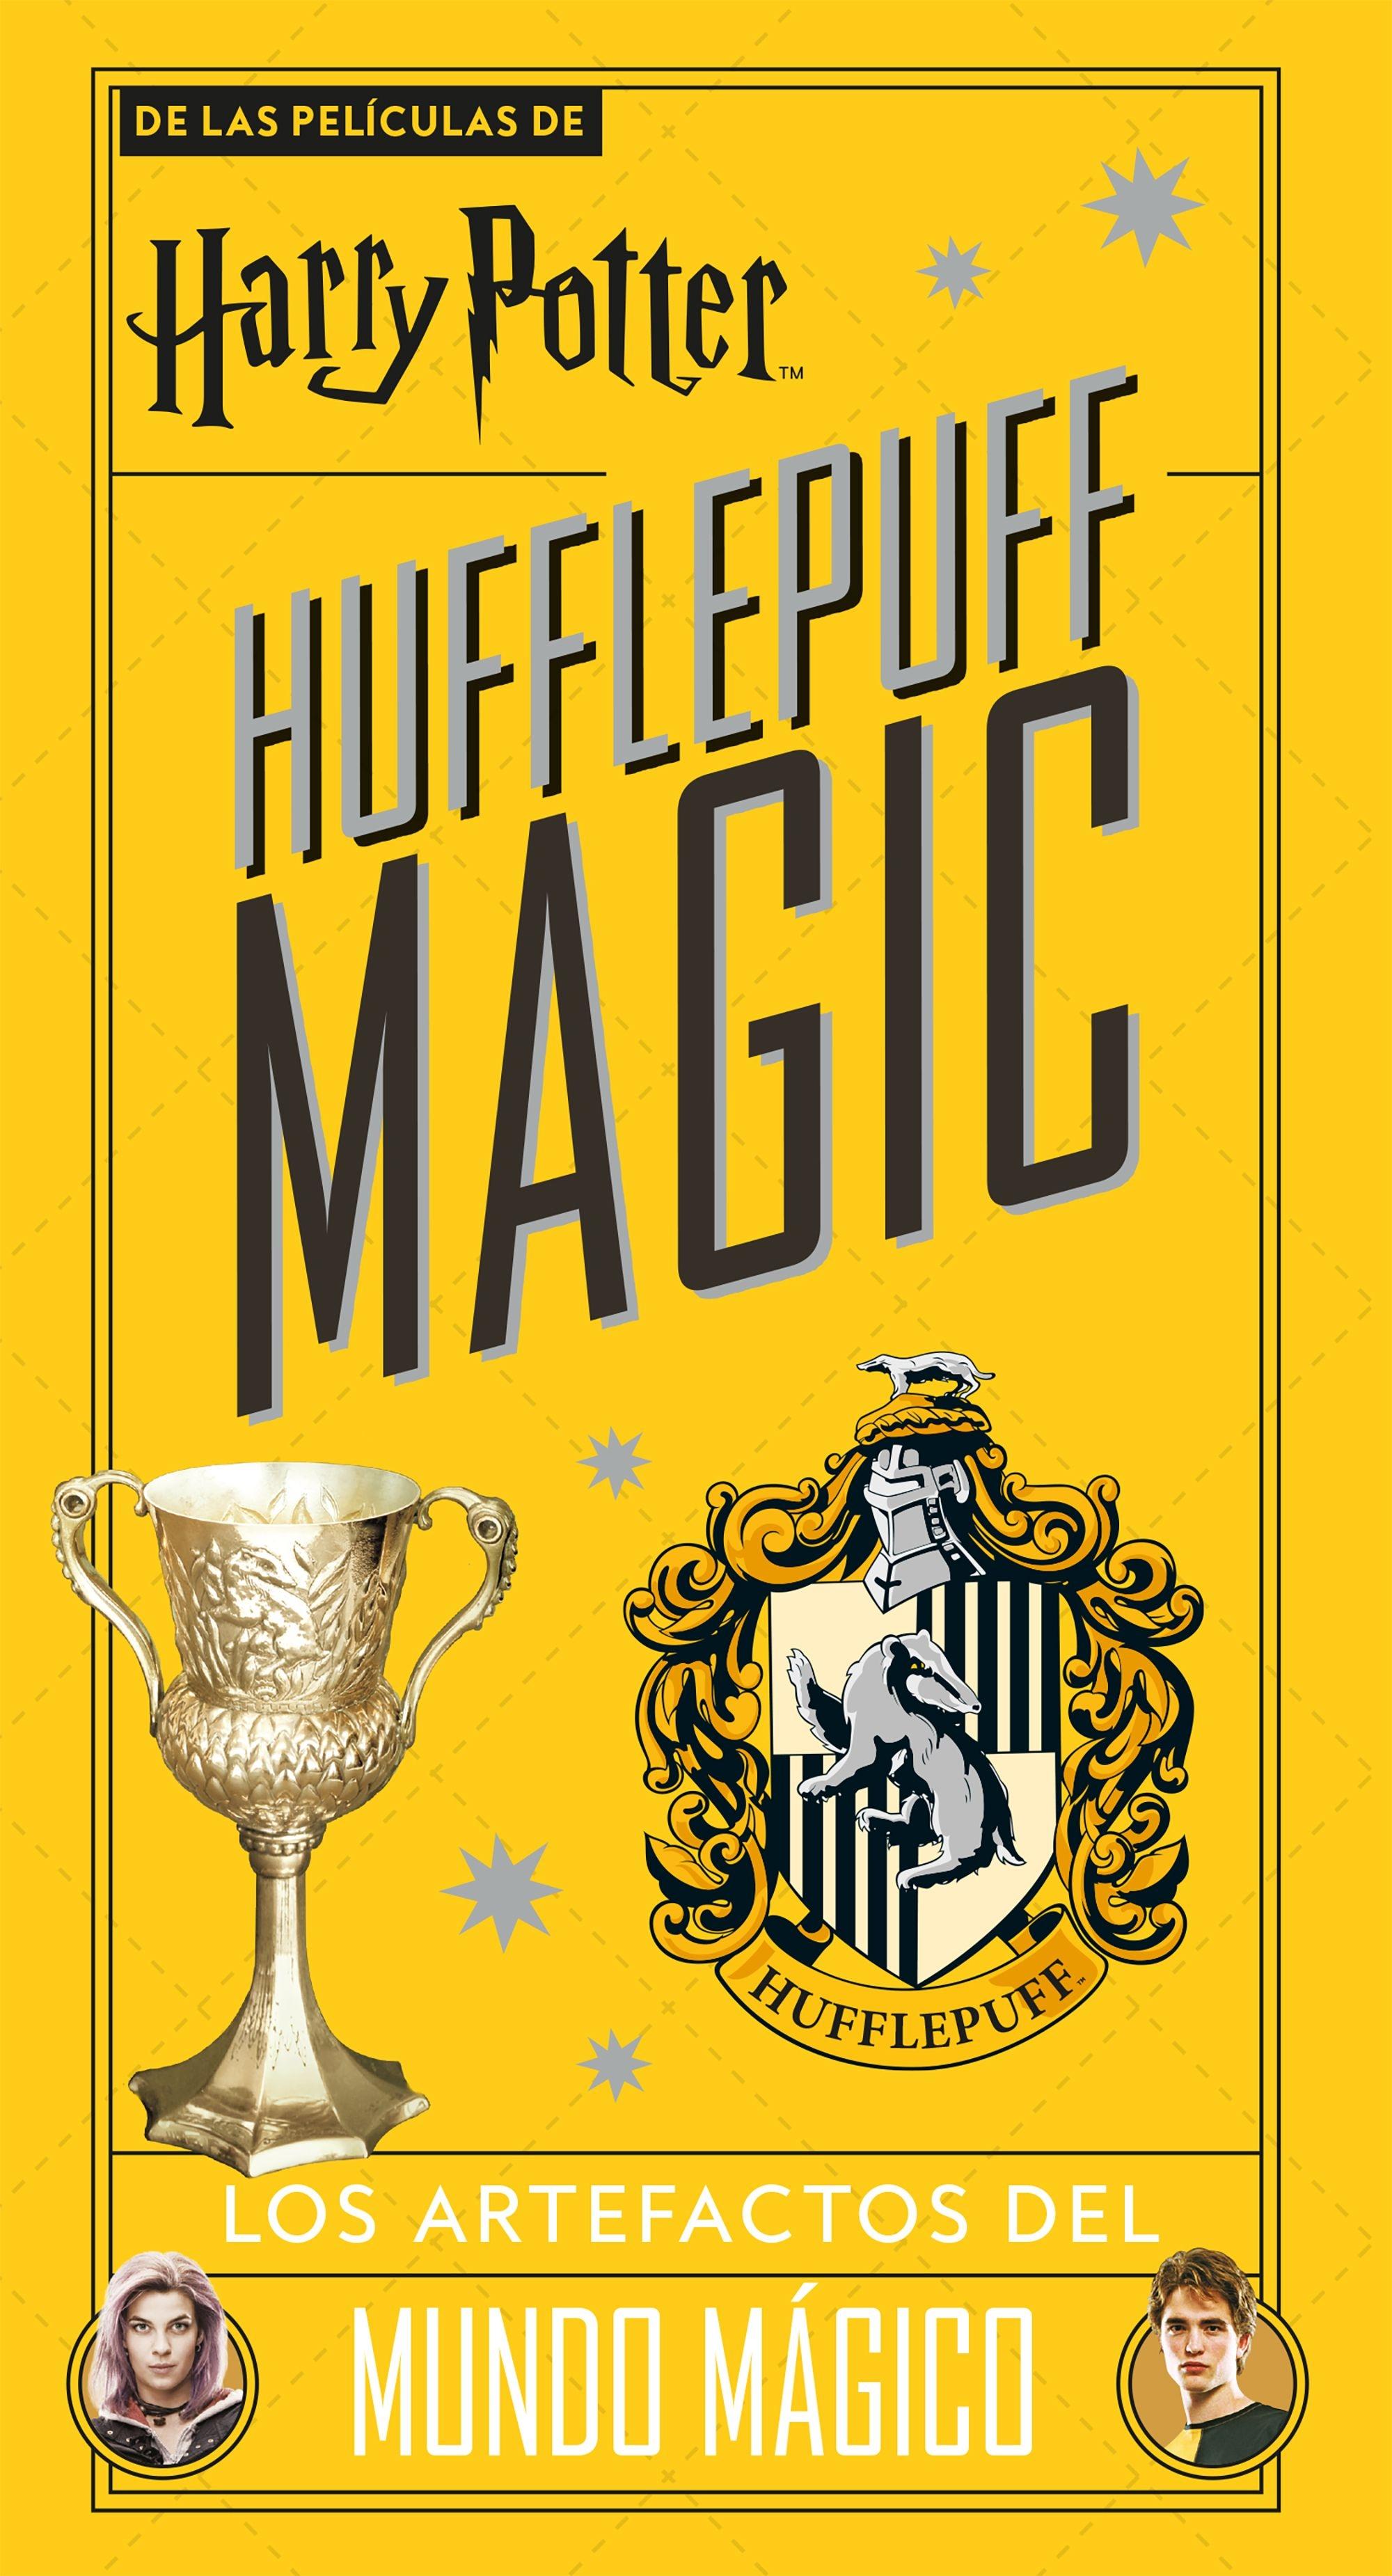 Harry Potter Hufflepuff Magic "Los artefactos del mundo mágico"